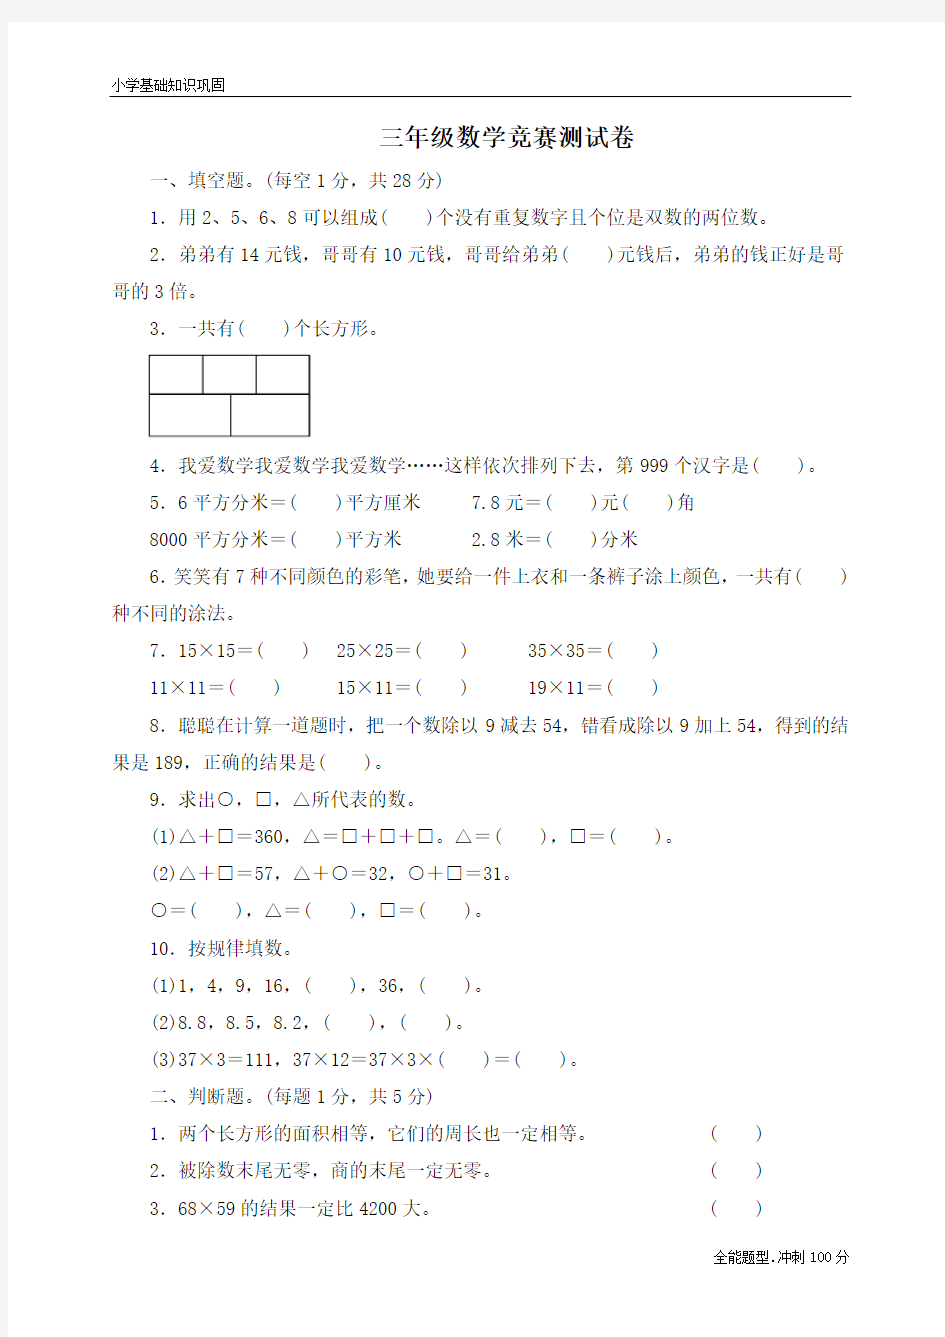 【精品】最新人教版数学三年级下册名校数学竞赛测试卷